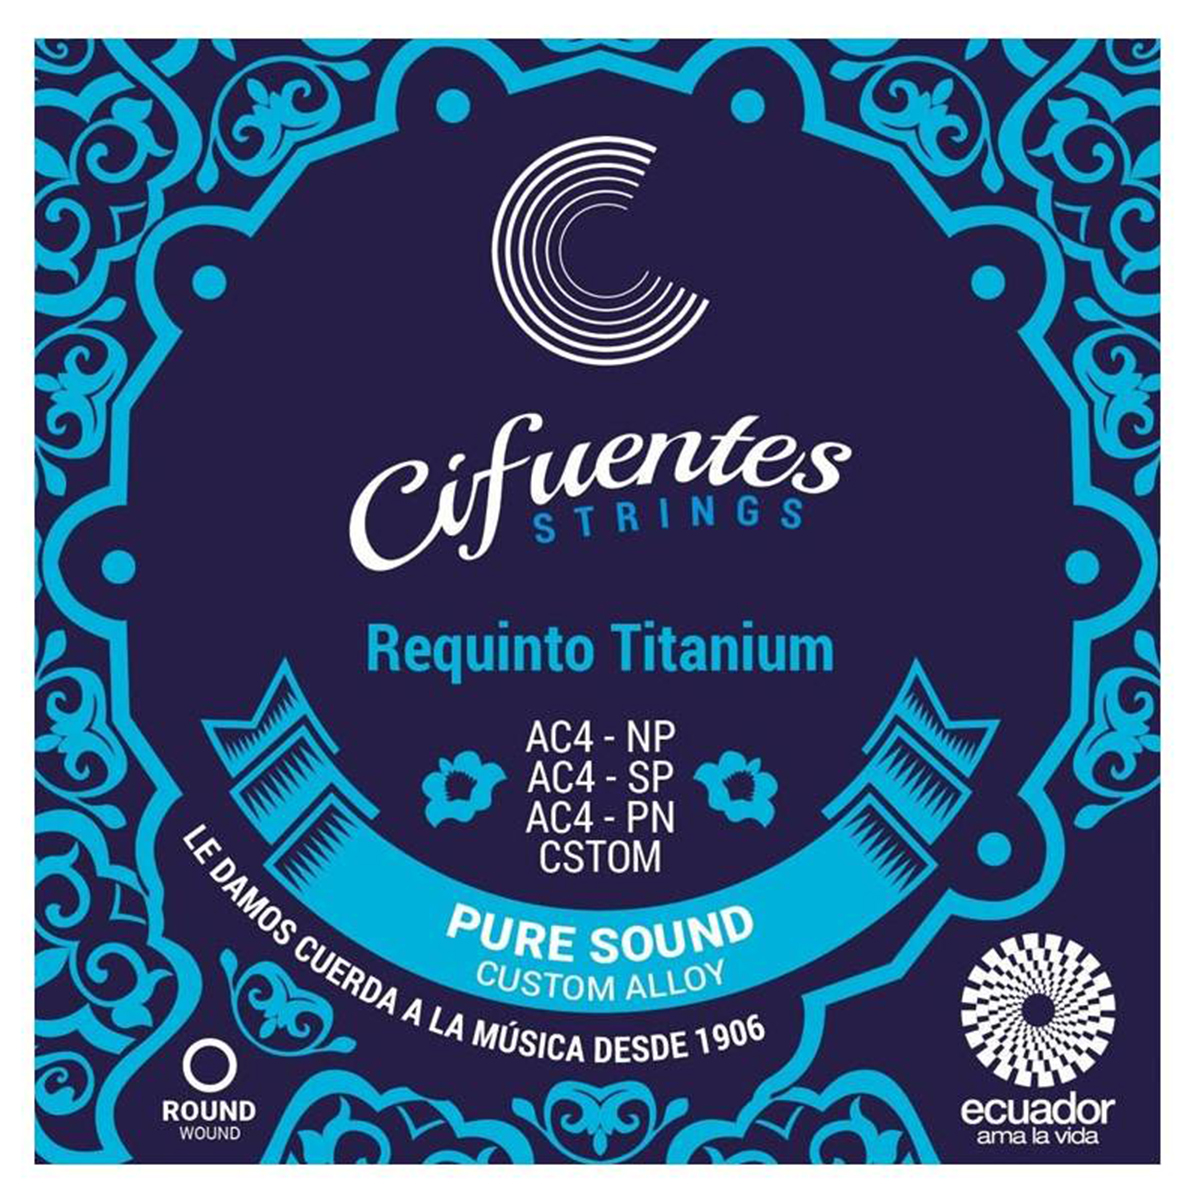 AC4 SP Cuerdas Requinto Ditronics Ecuador 1